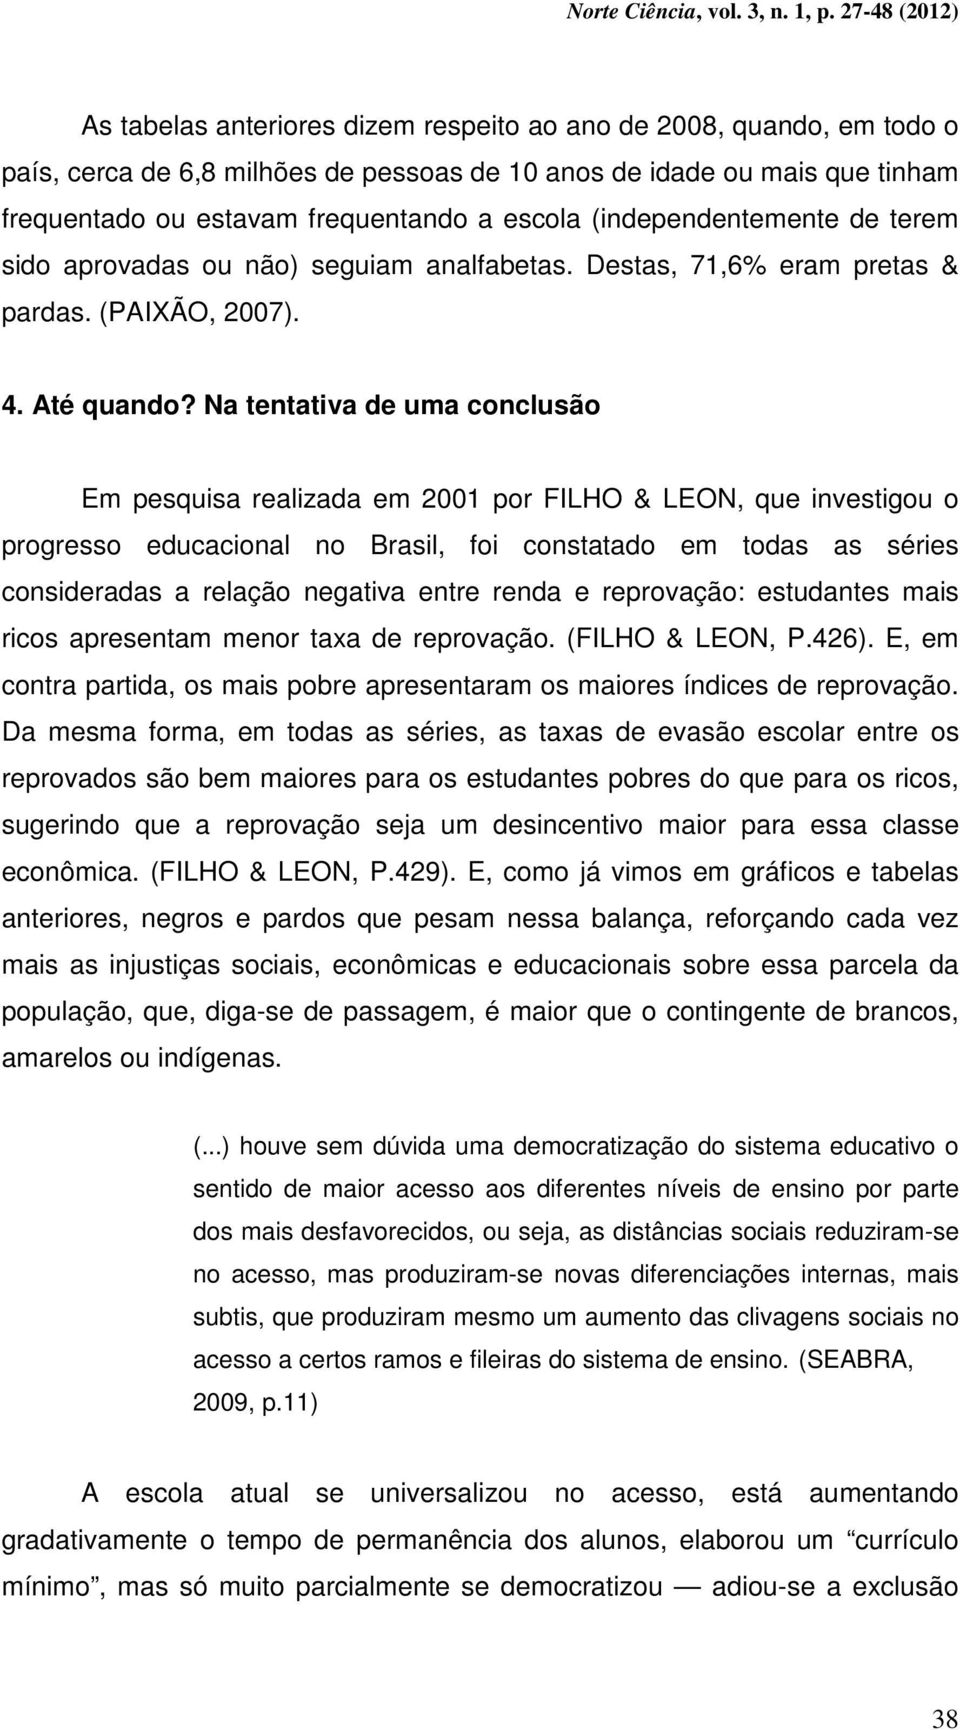 Na tentativa de uma conclusão Em pesquisa realizada em 2001 por FILHO & LEON, que investigou o progresso educacional no Brasil, foi constatado em todas as séries consideradas a relação negativa entre